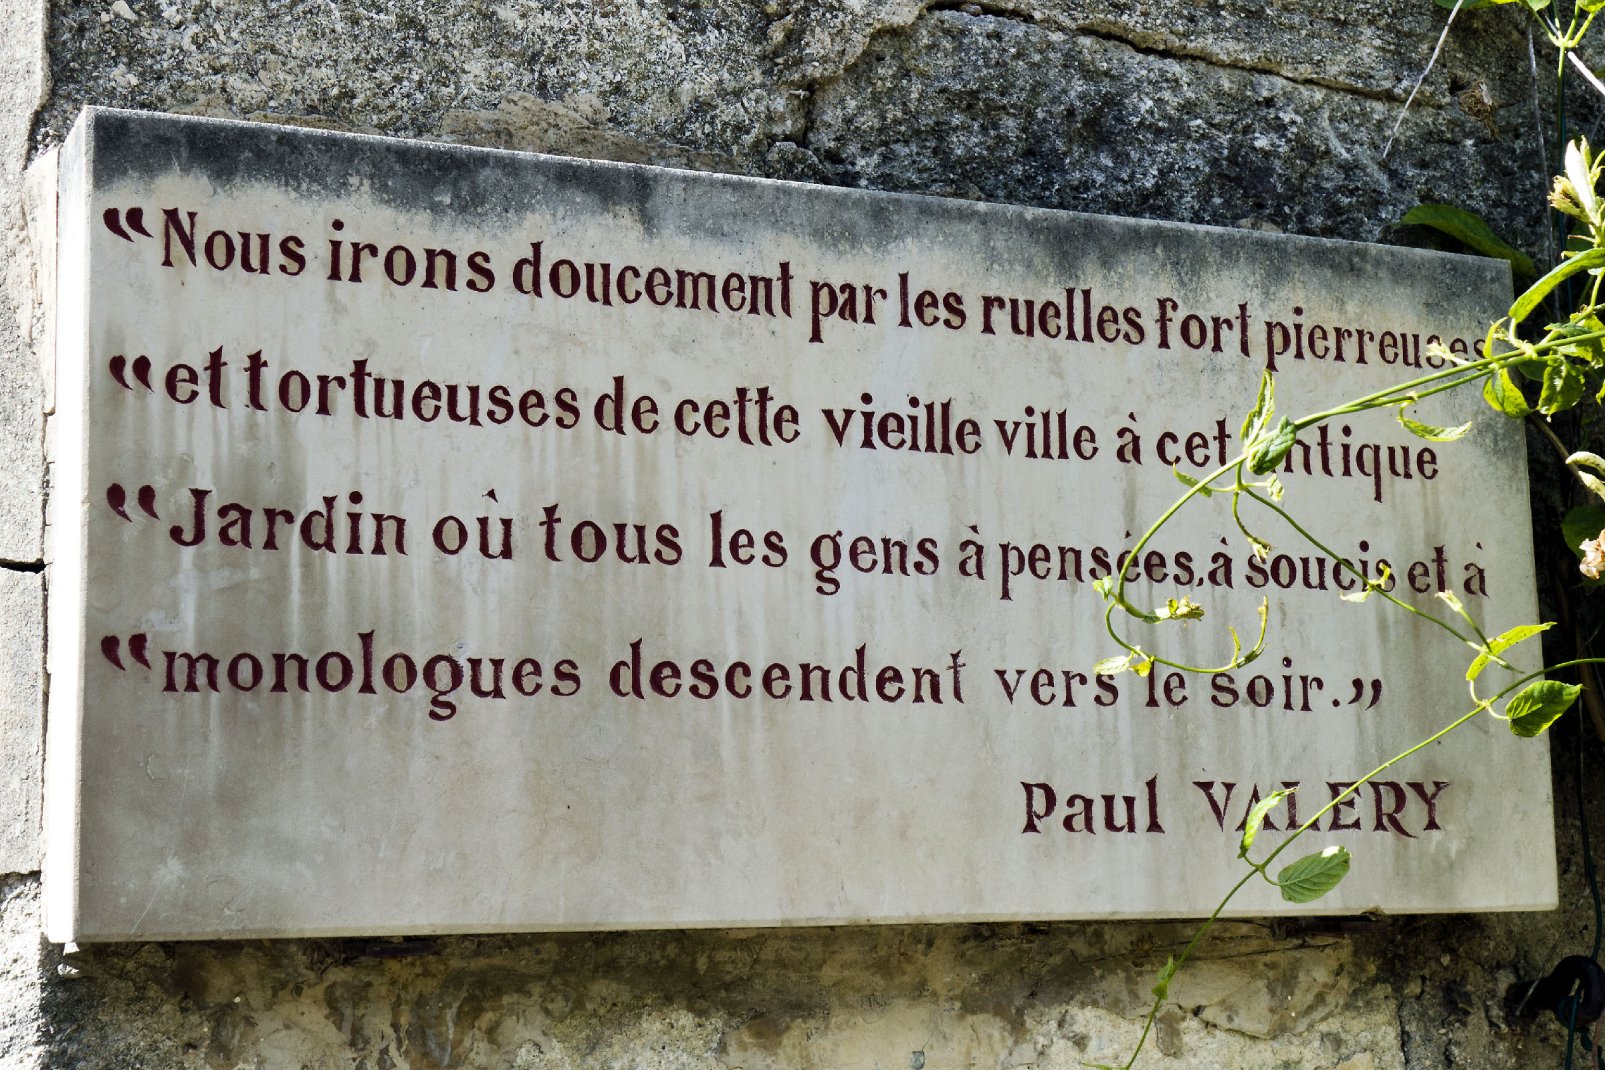 Gravée sur une pierre du Jardin des Plantes, cette citation extraite d'une oeuvre de l'écrivain Paul Valéry décrit si bien l'esprit de Montpellier et son jardin botanique.